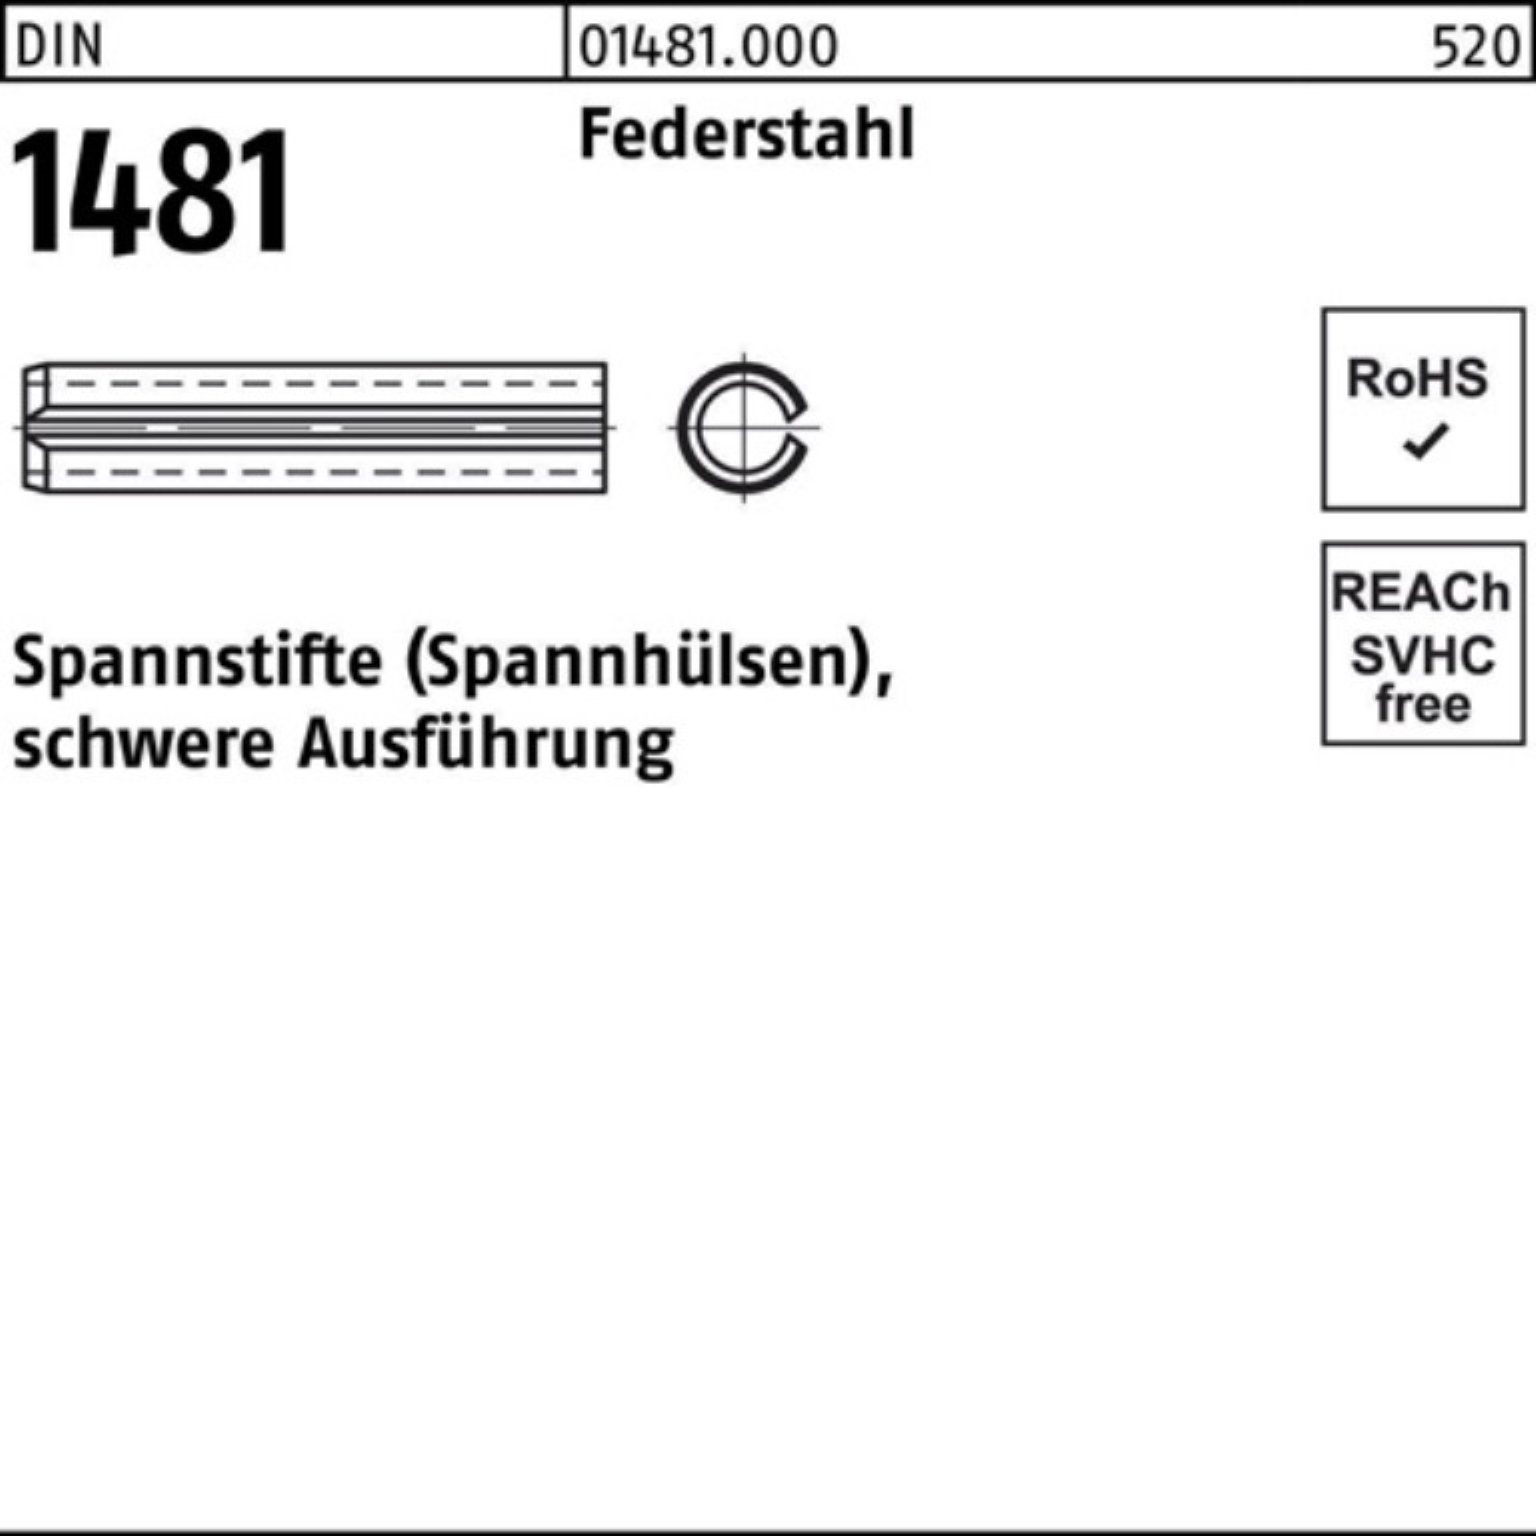 Reyher Spannstift 100er Pack Spannstift DIN 1481 9x 60 Federstahl schwere Ausführung 50